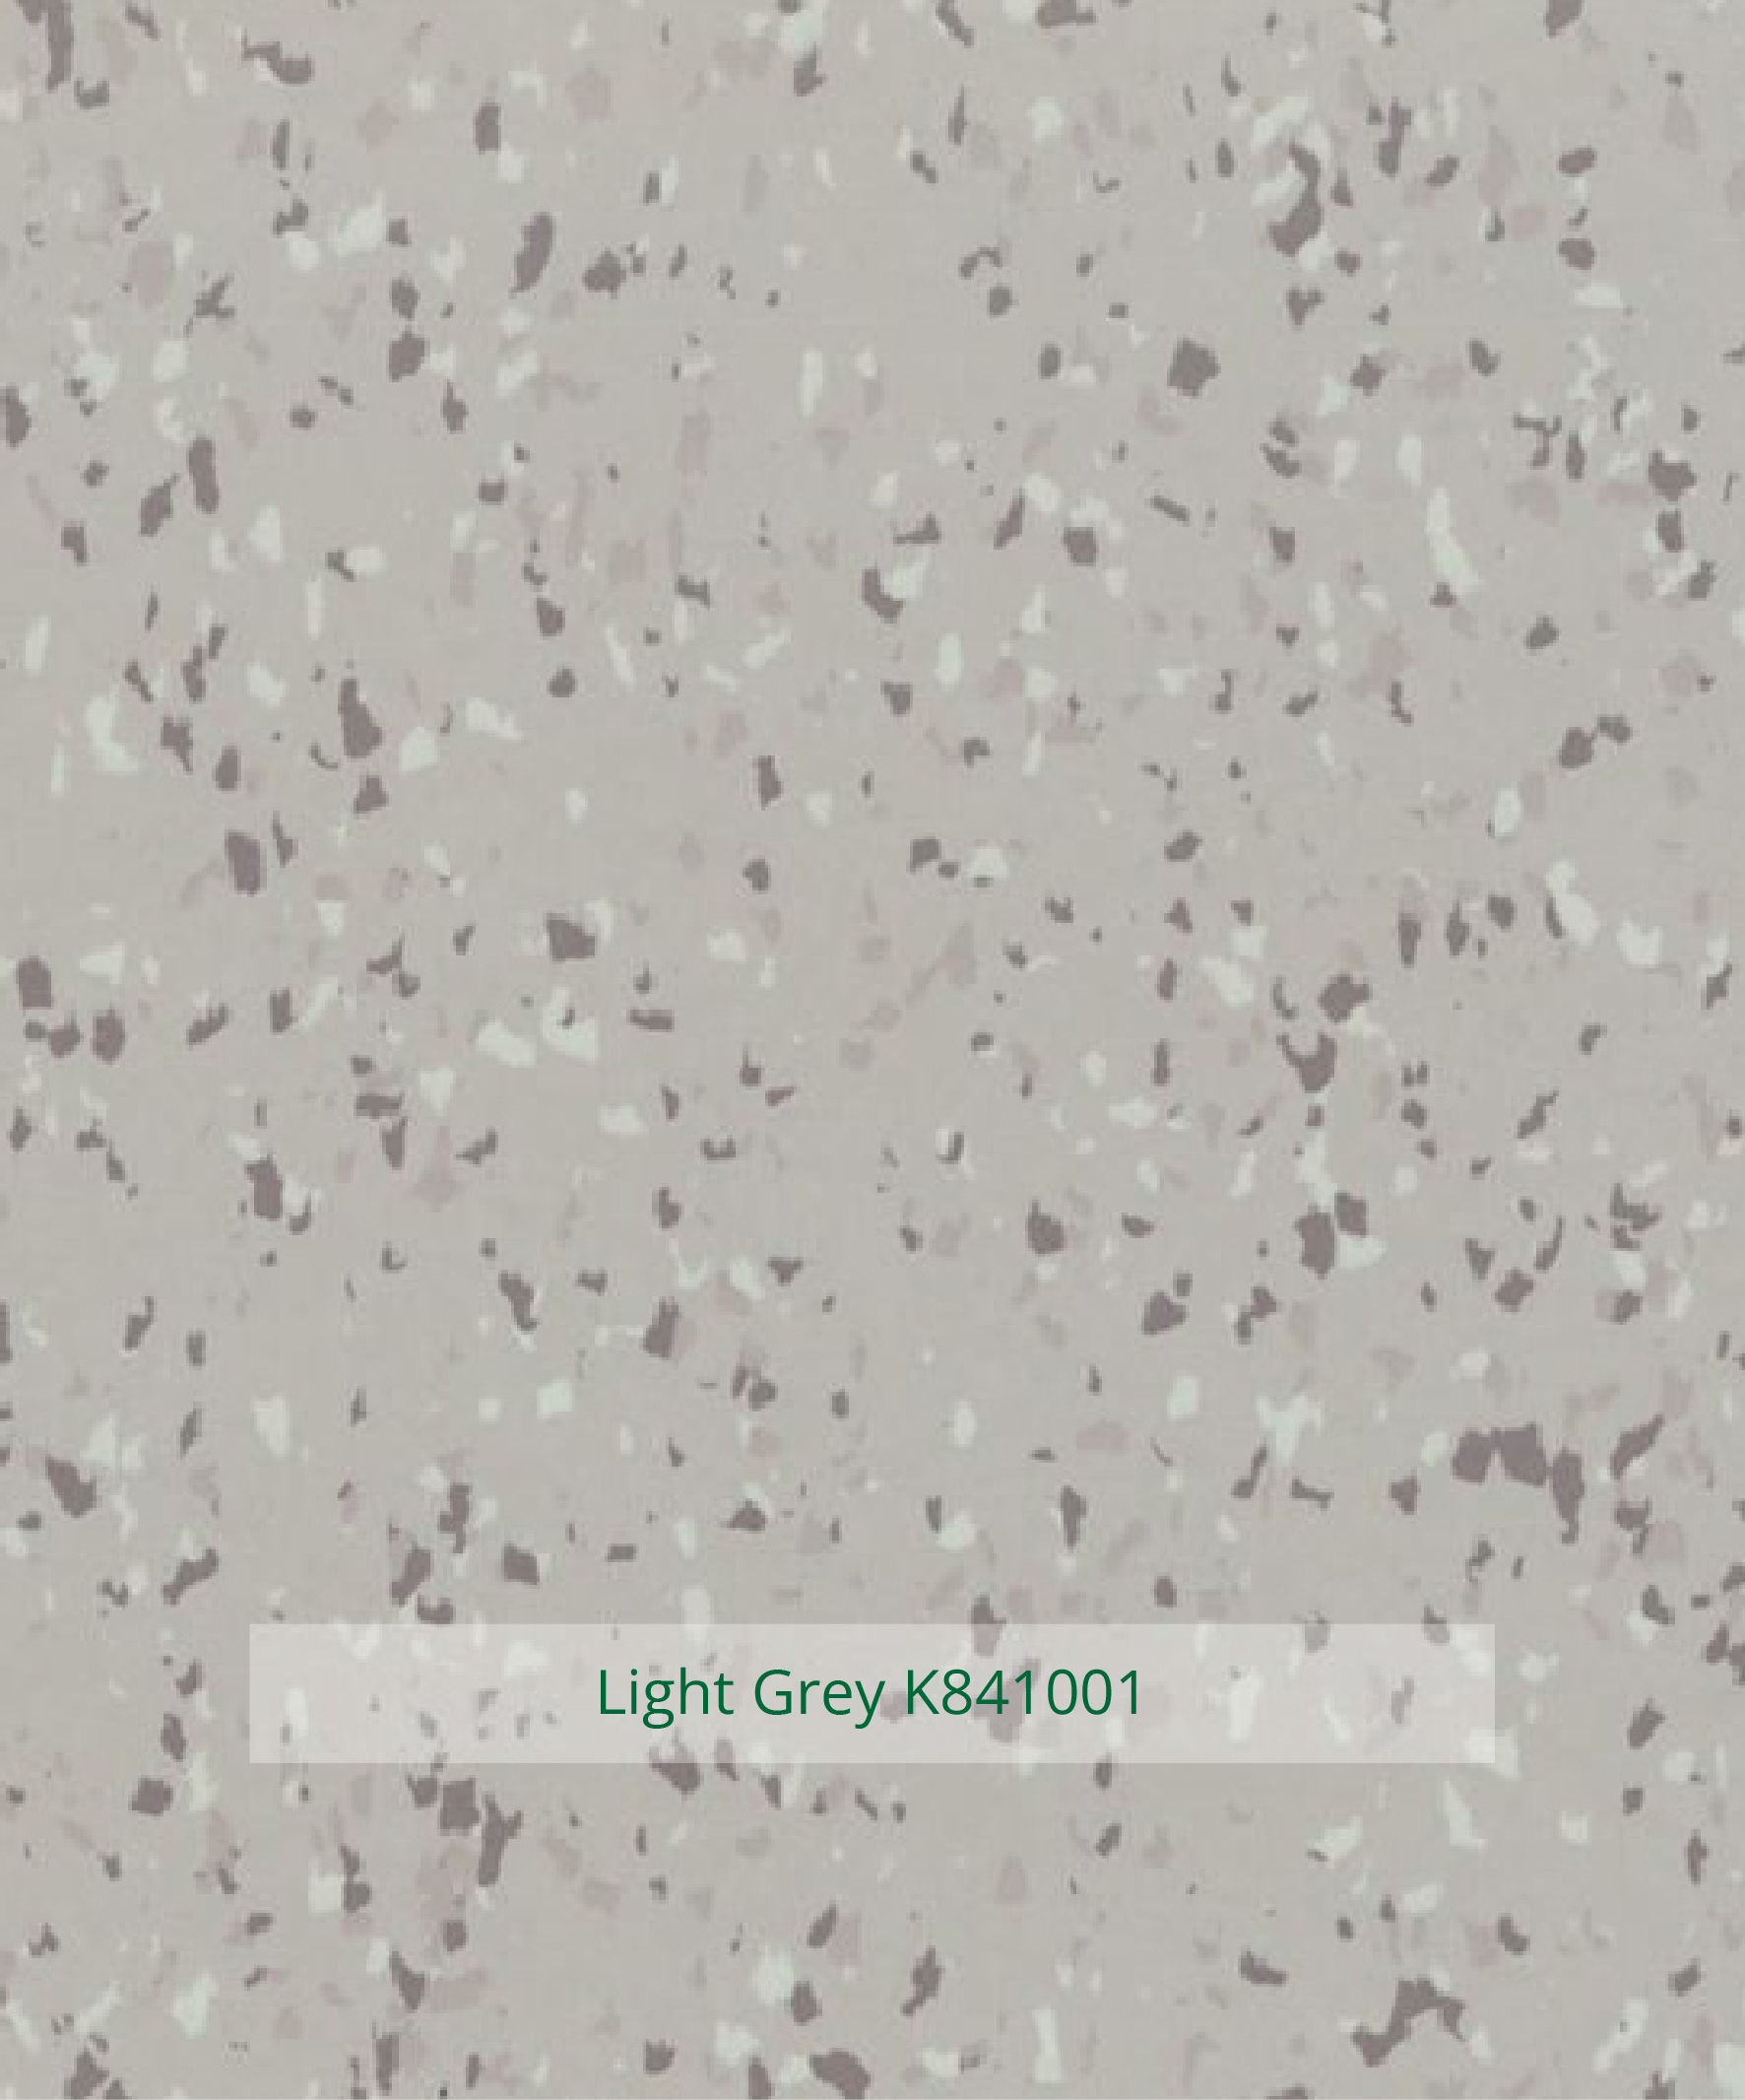 Crysolit Light Grey K841001